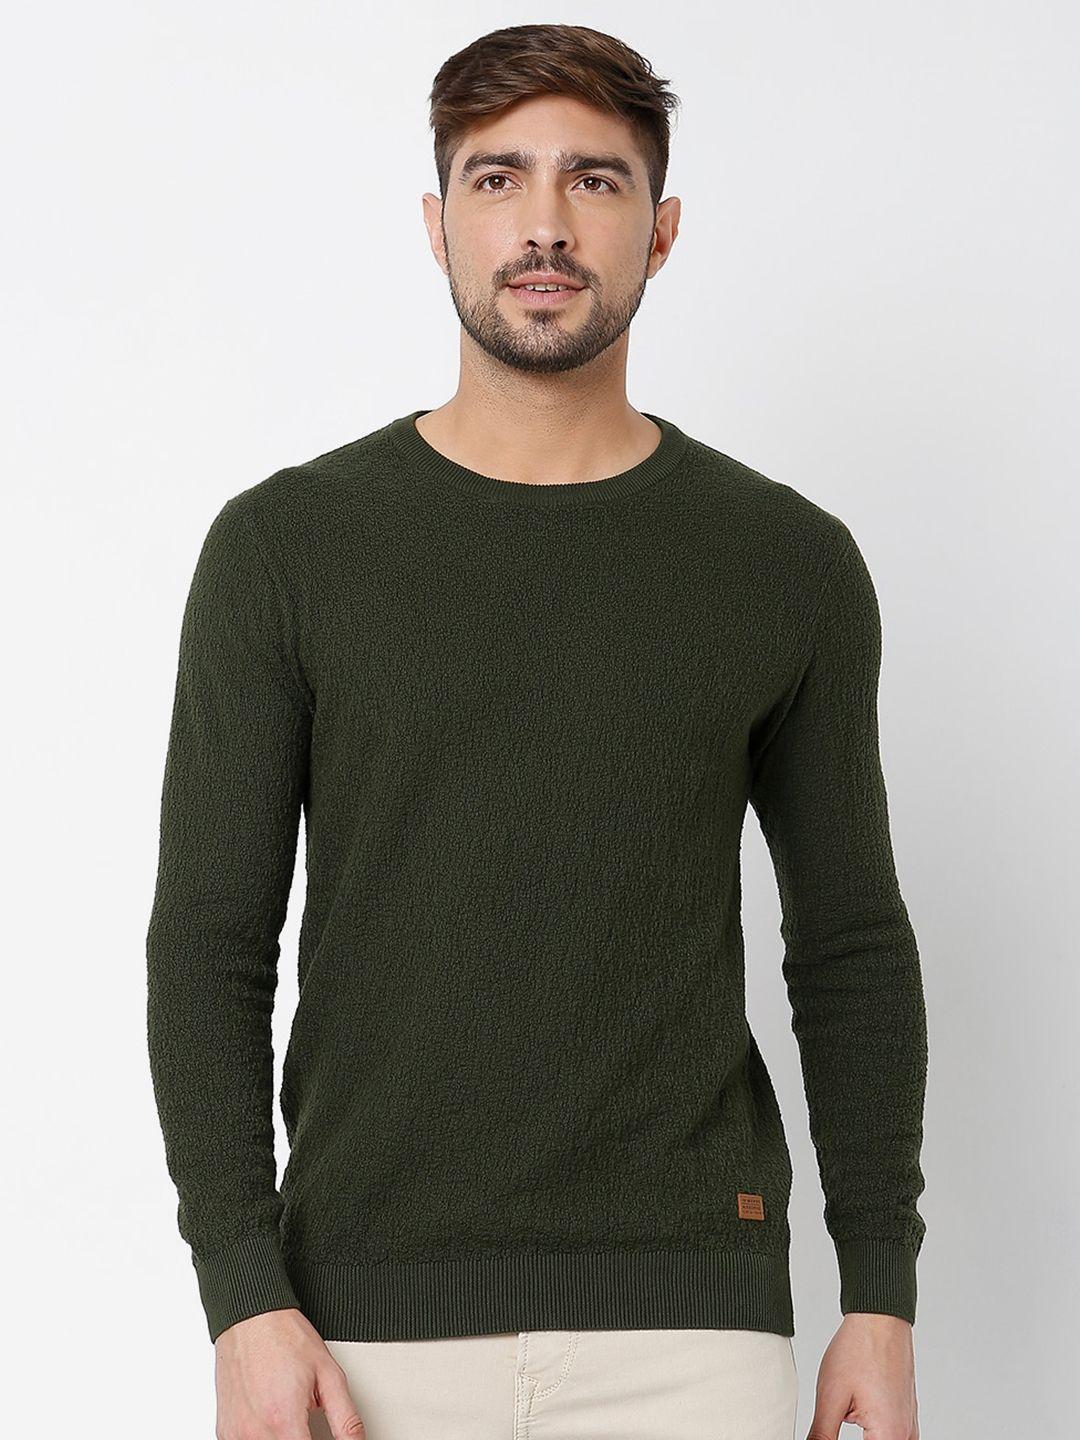 mufti-round-neck-pure-cotton-sweatshirt